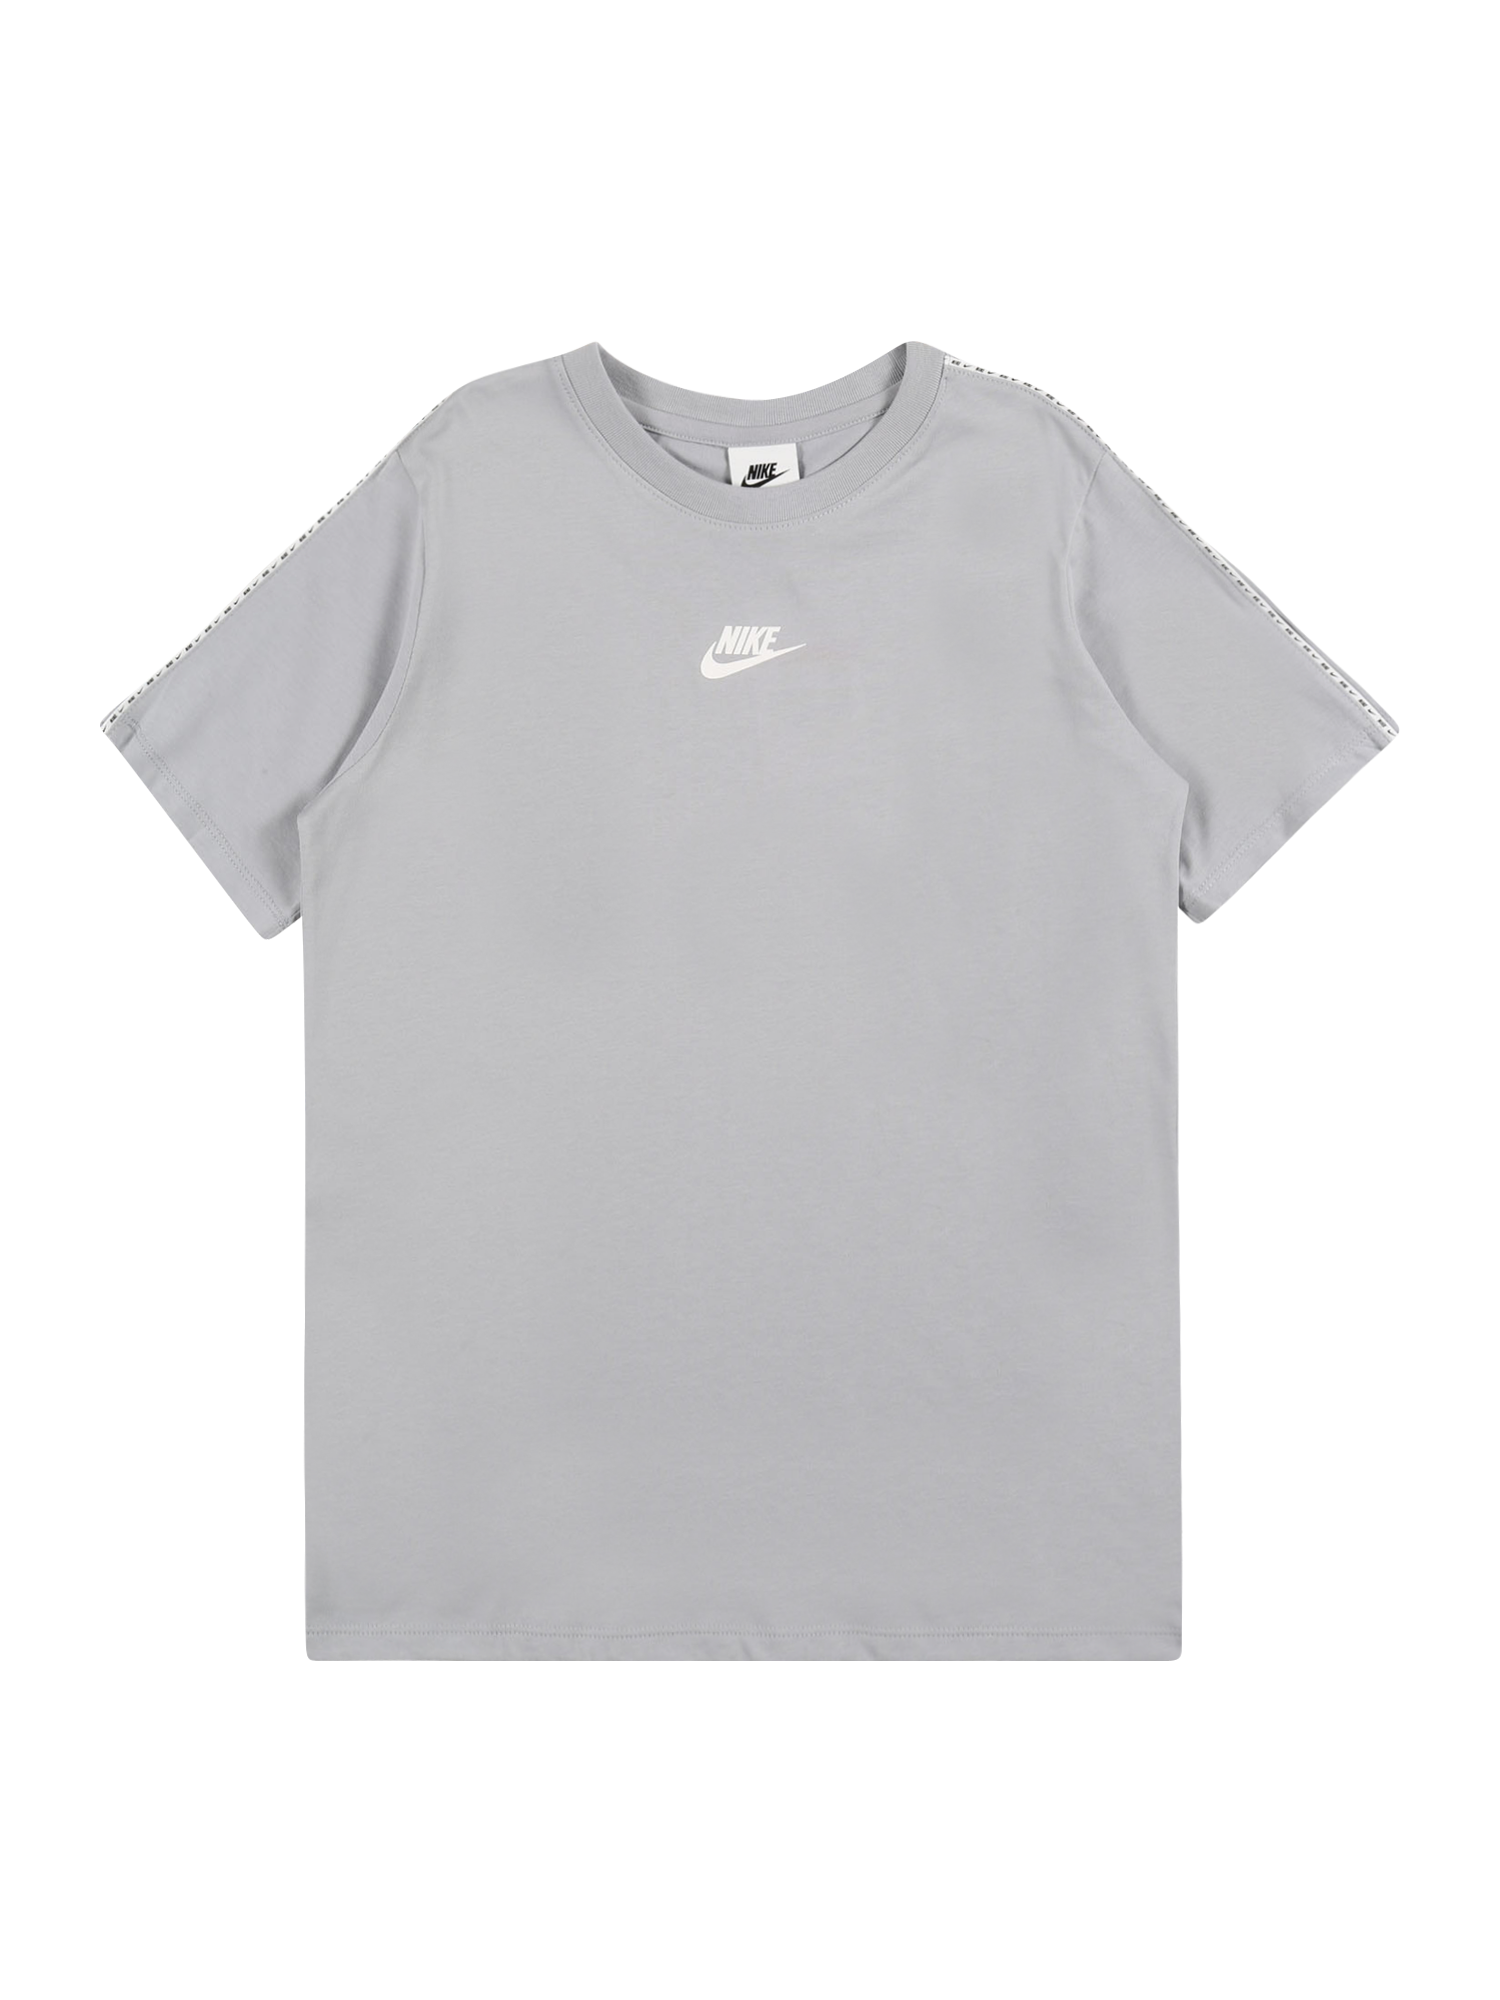 Chłopcy AaC75 Nike Sportswear Koszulka w kolorze Szarym 